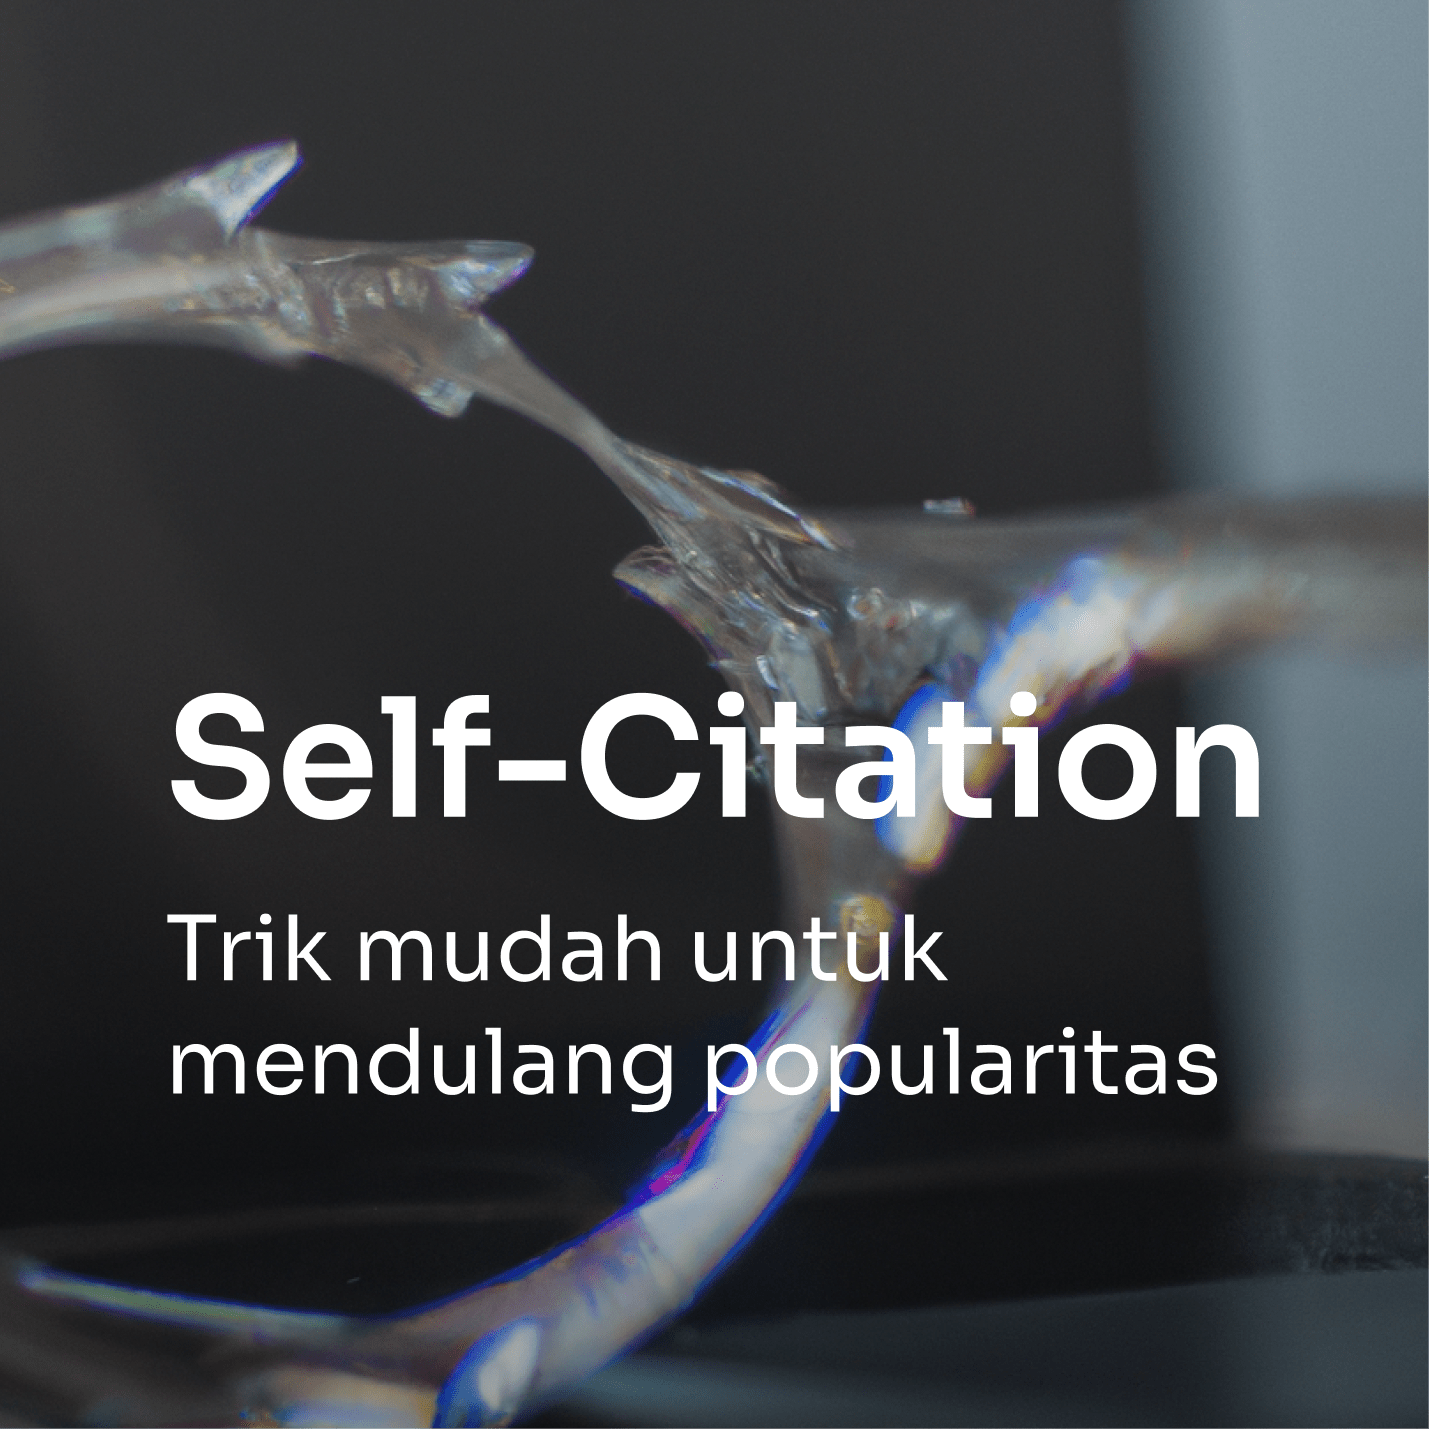 Self-Citation: Trik Mendulang Popularitas di Dunia Penelitian